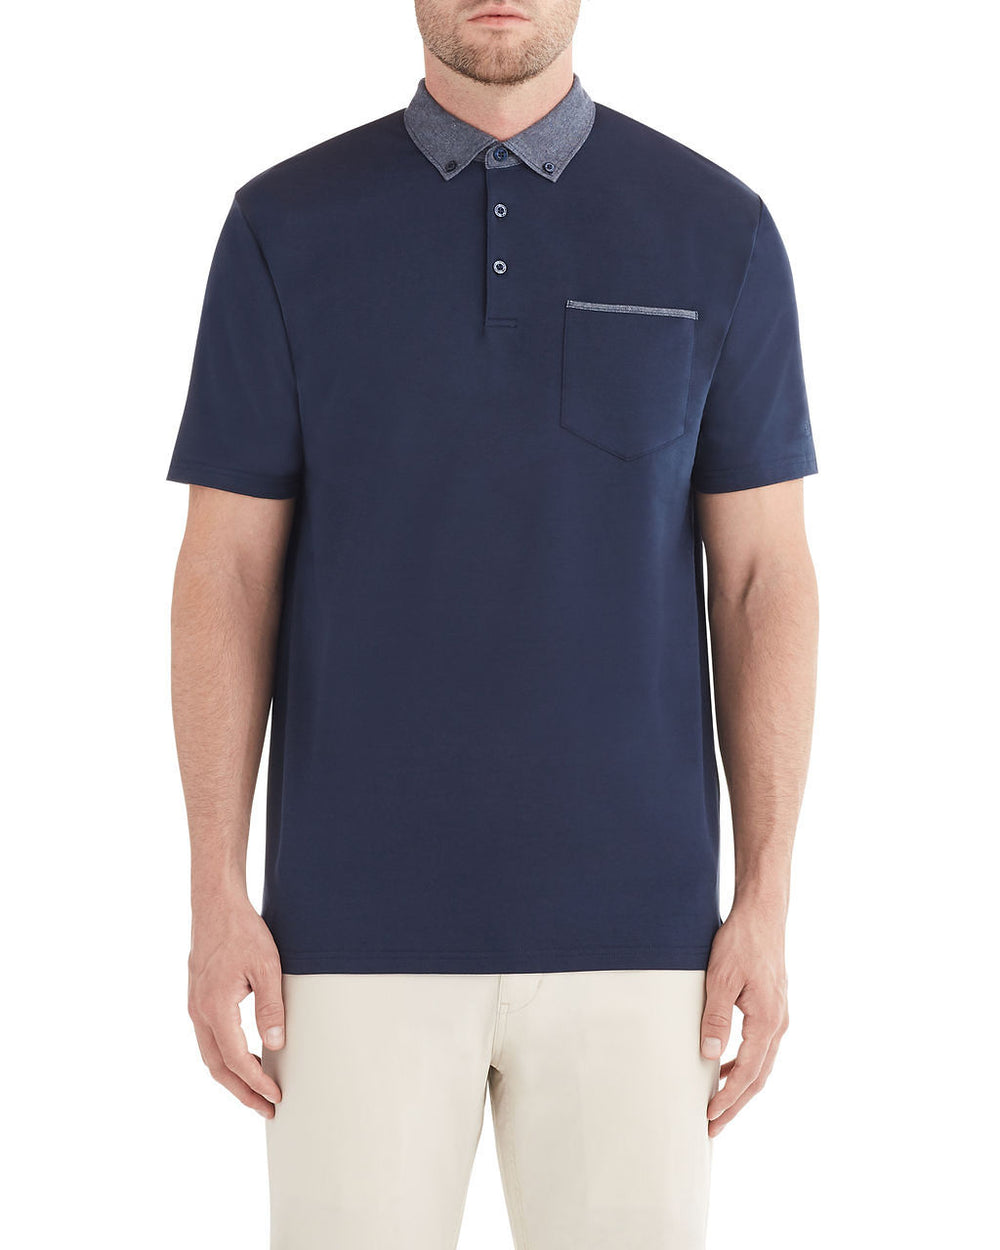 X Print Woven Collar Polo Shirt - Navy